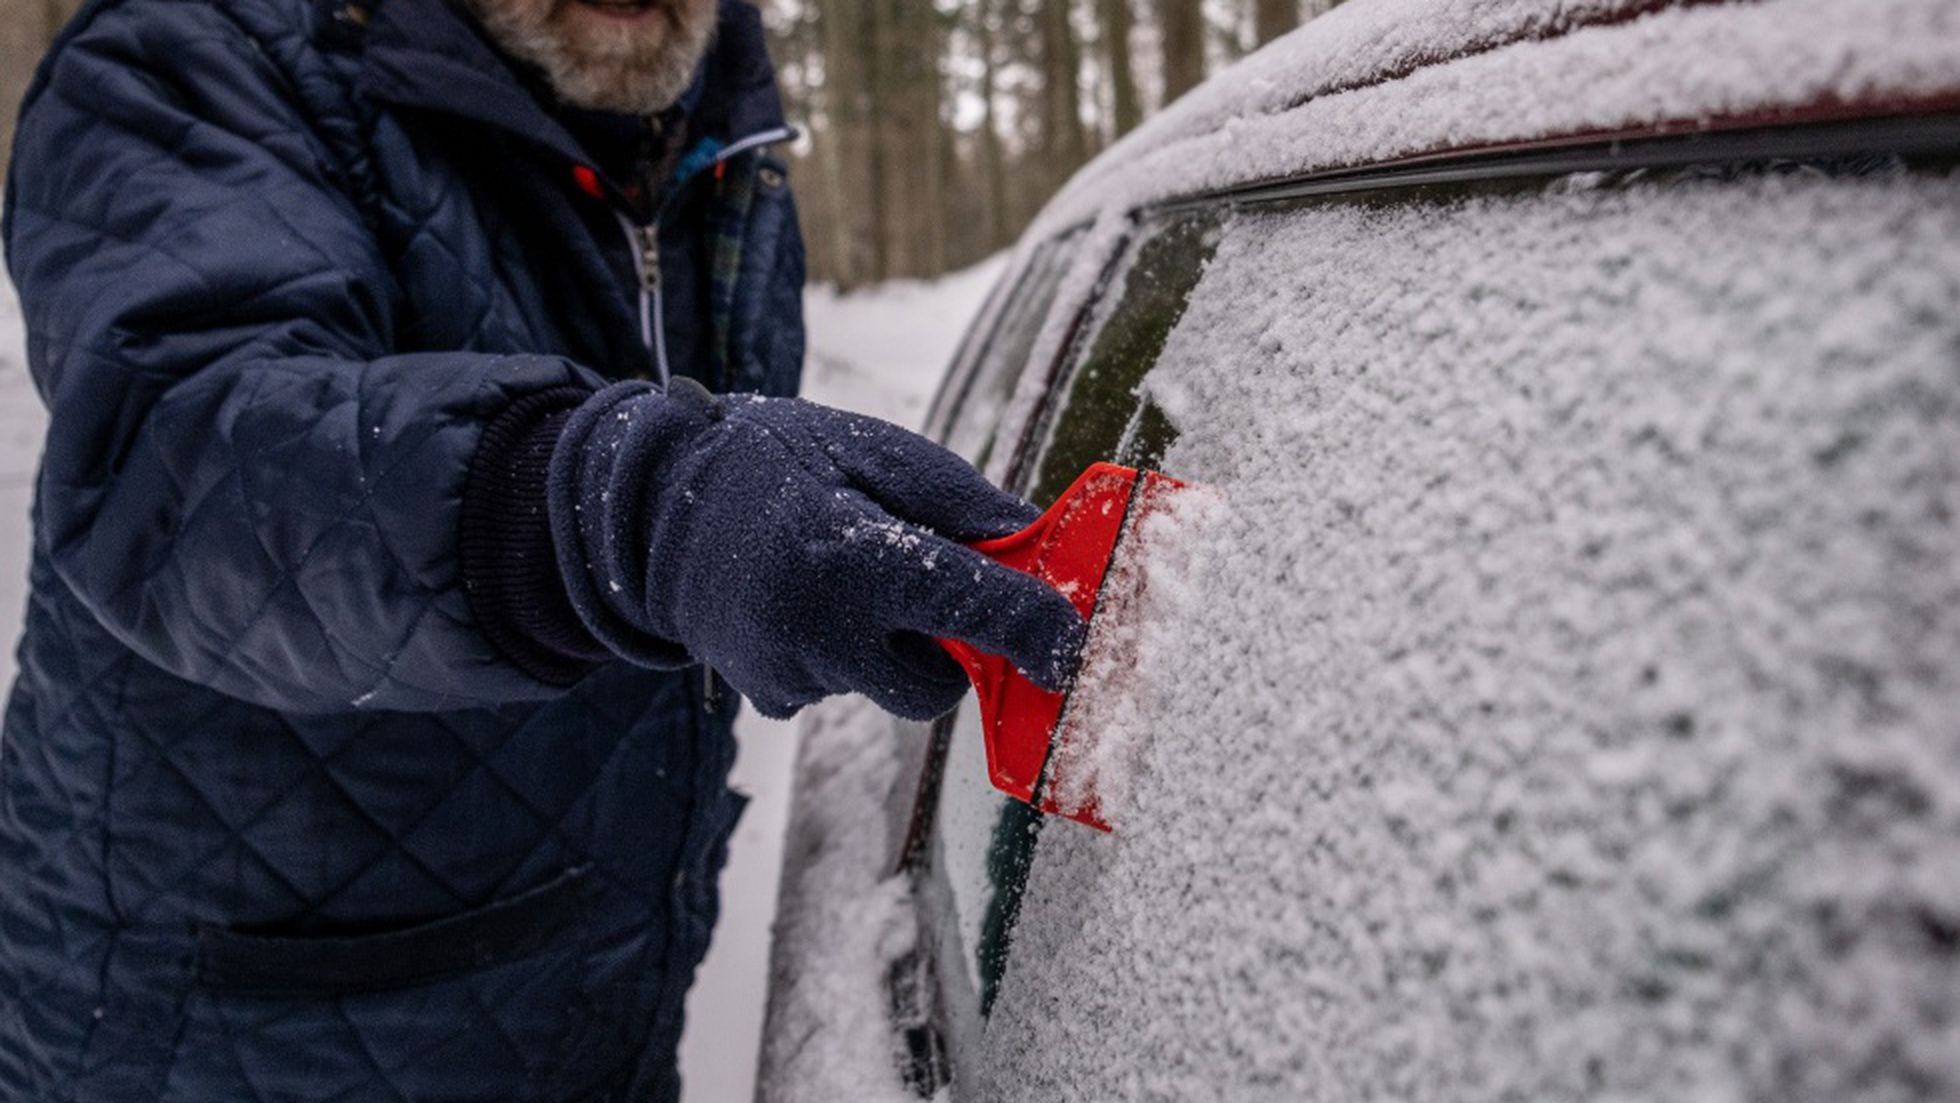 Equipa tu coche para la nieve y el hielo con este 'kit' básico | Escaparate: y ofertas | EL PAÍS